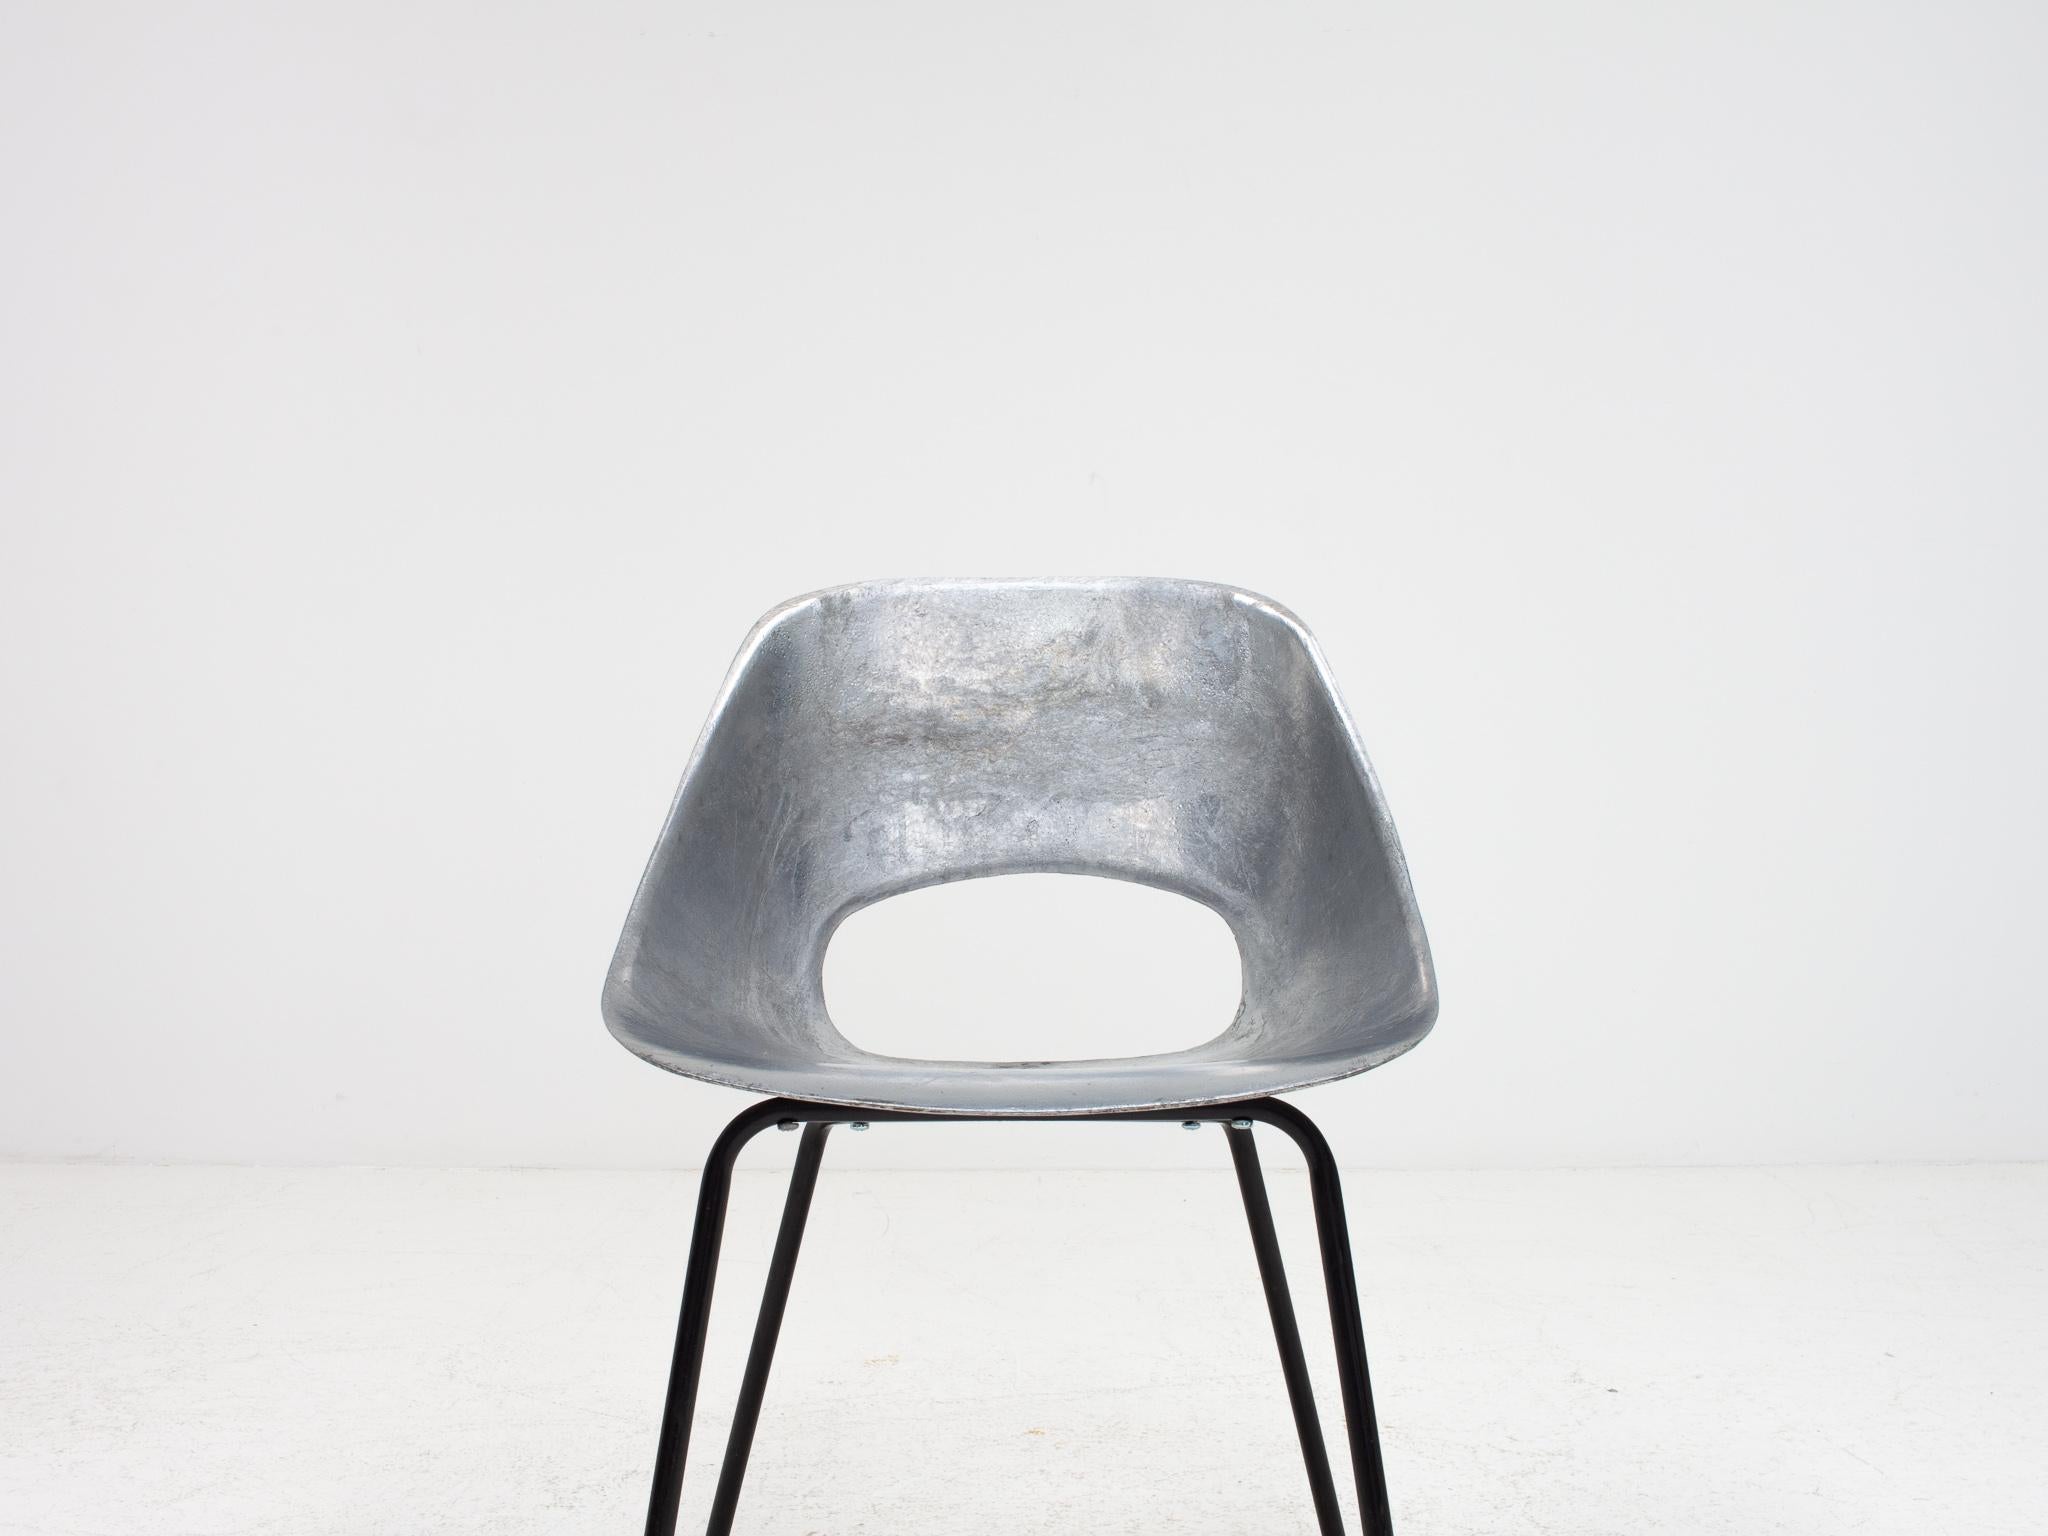 Pierre Guariche Tulip Chair, Cast Aluminum, Steiner Meubles, Paris, 1954 For Sale 6